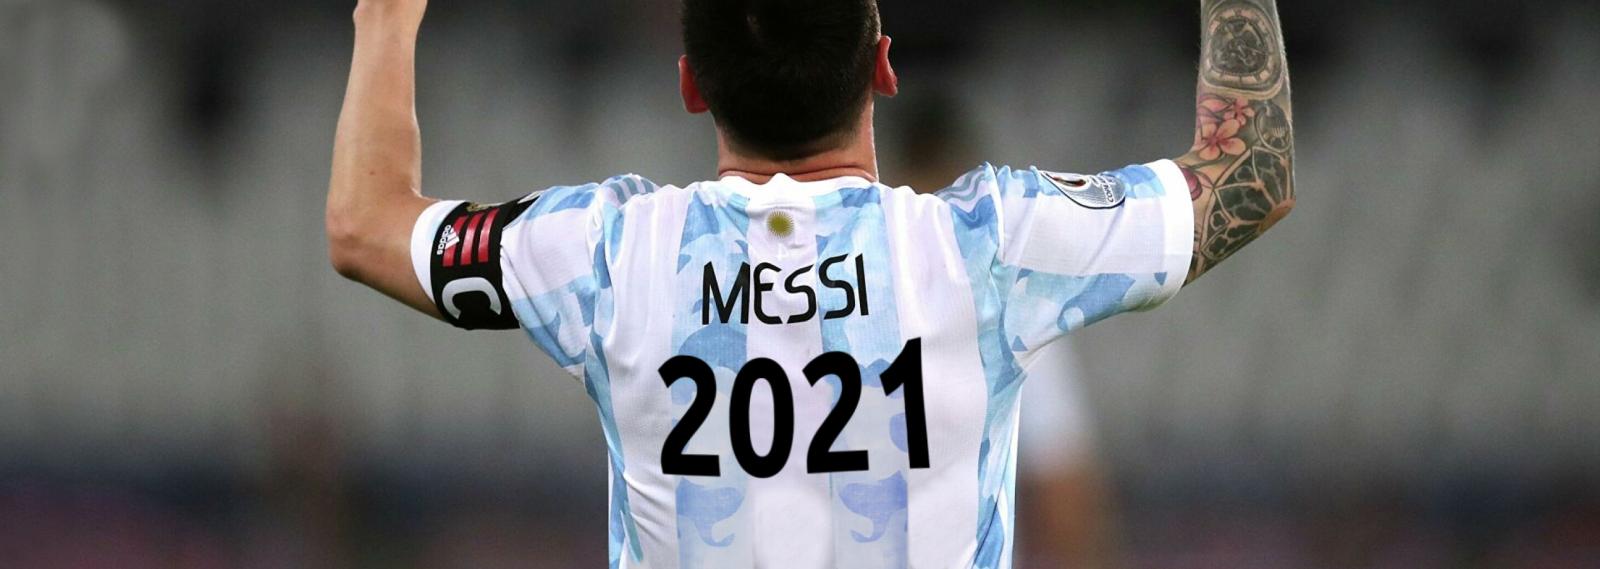 Imagen 2021, un año especial para Lionel Messi (DISEÑO: MATÍAS DI JULIO)